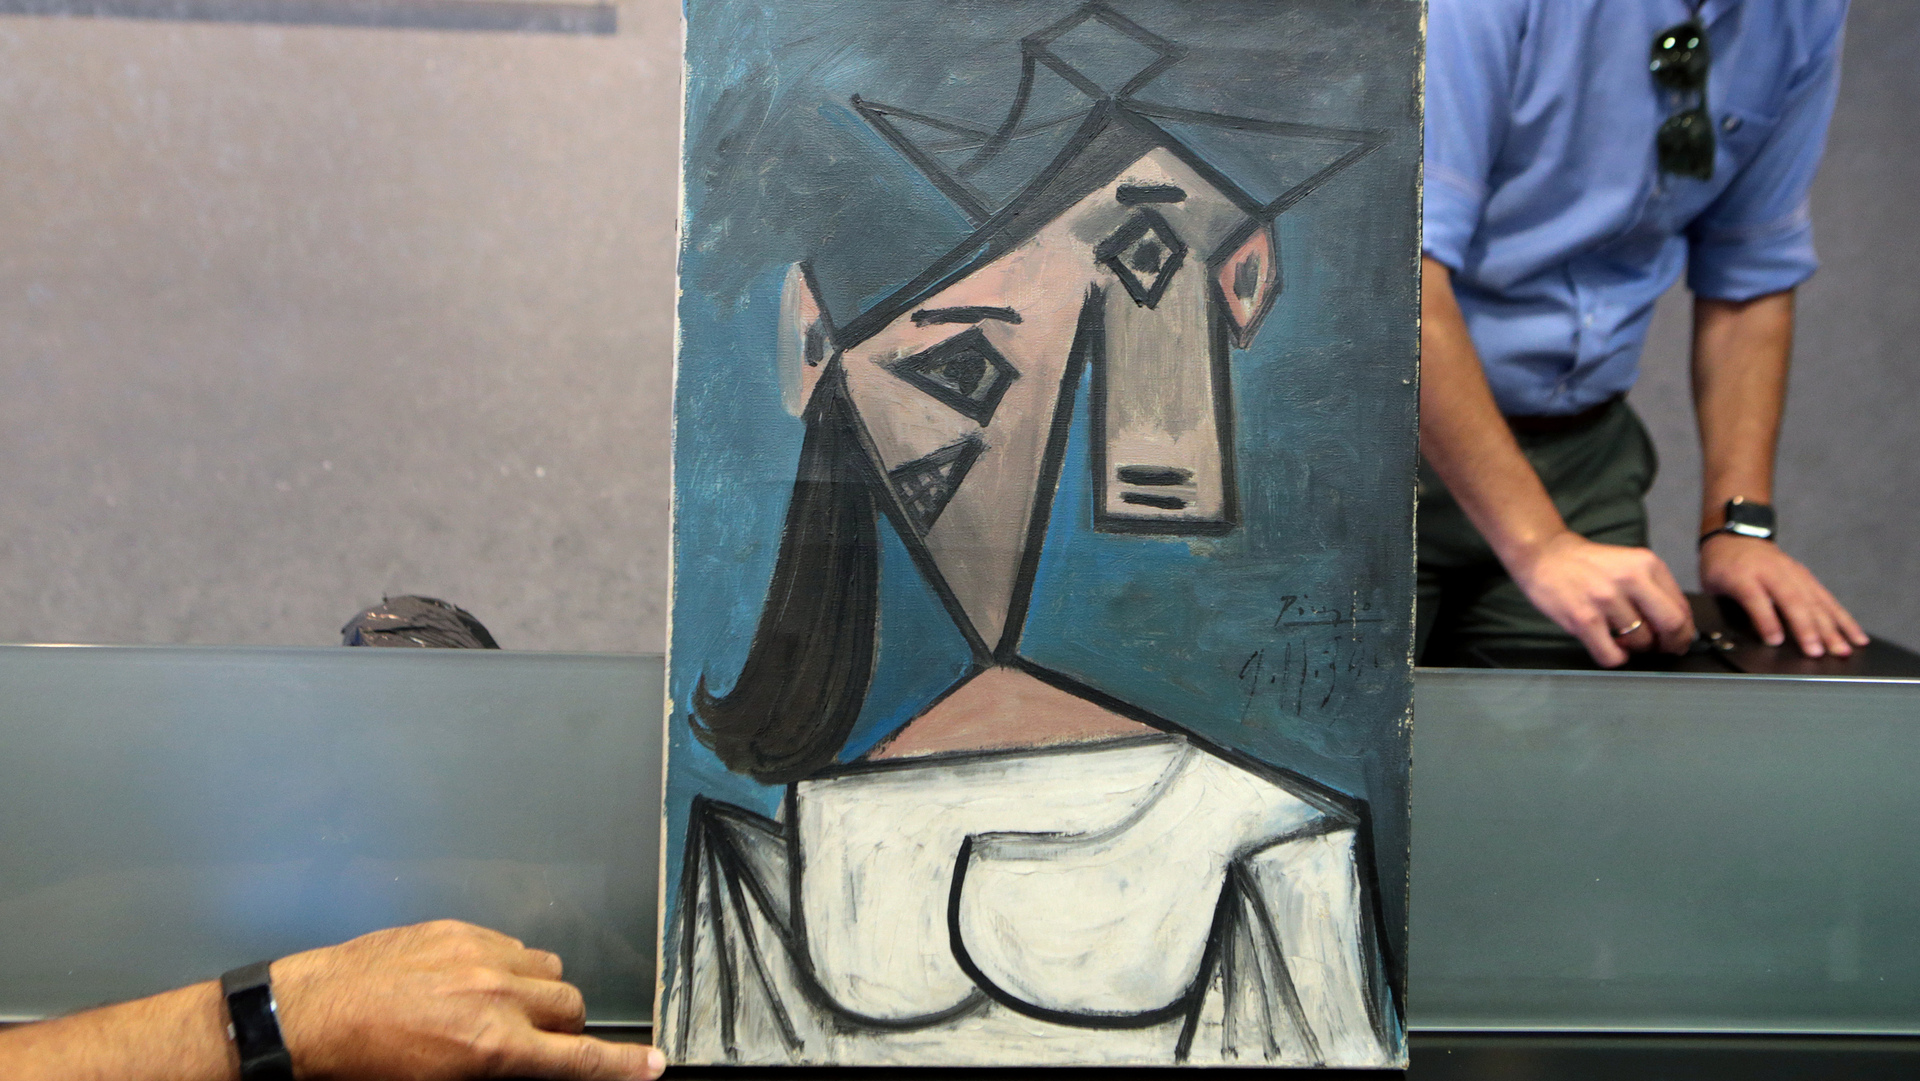 הציור "ראש של אישה" של פיקאסו הוחזר לאחר שנגנב ונפל מהדוכן